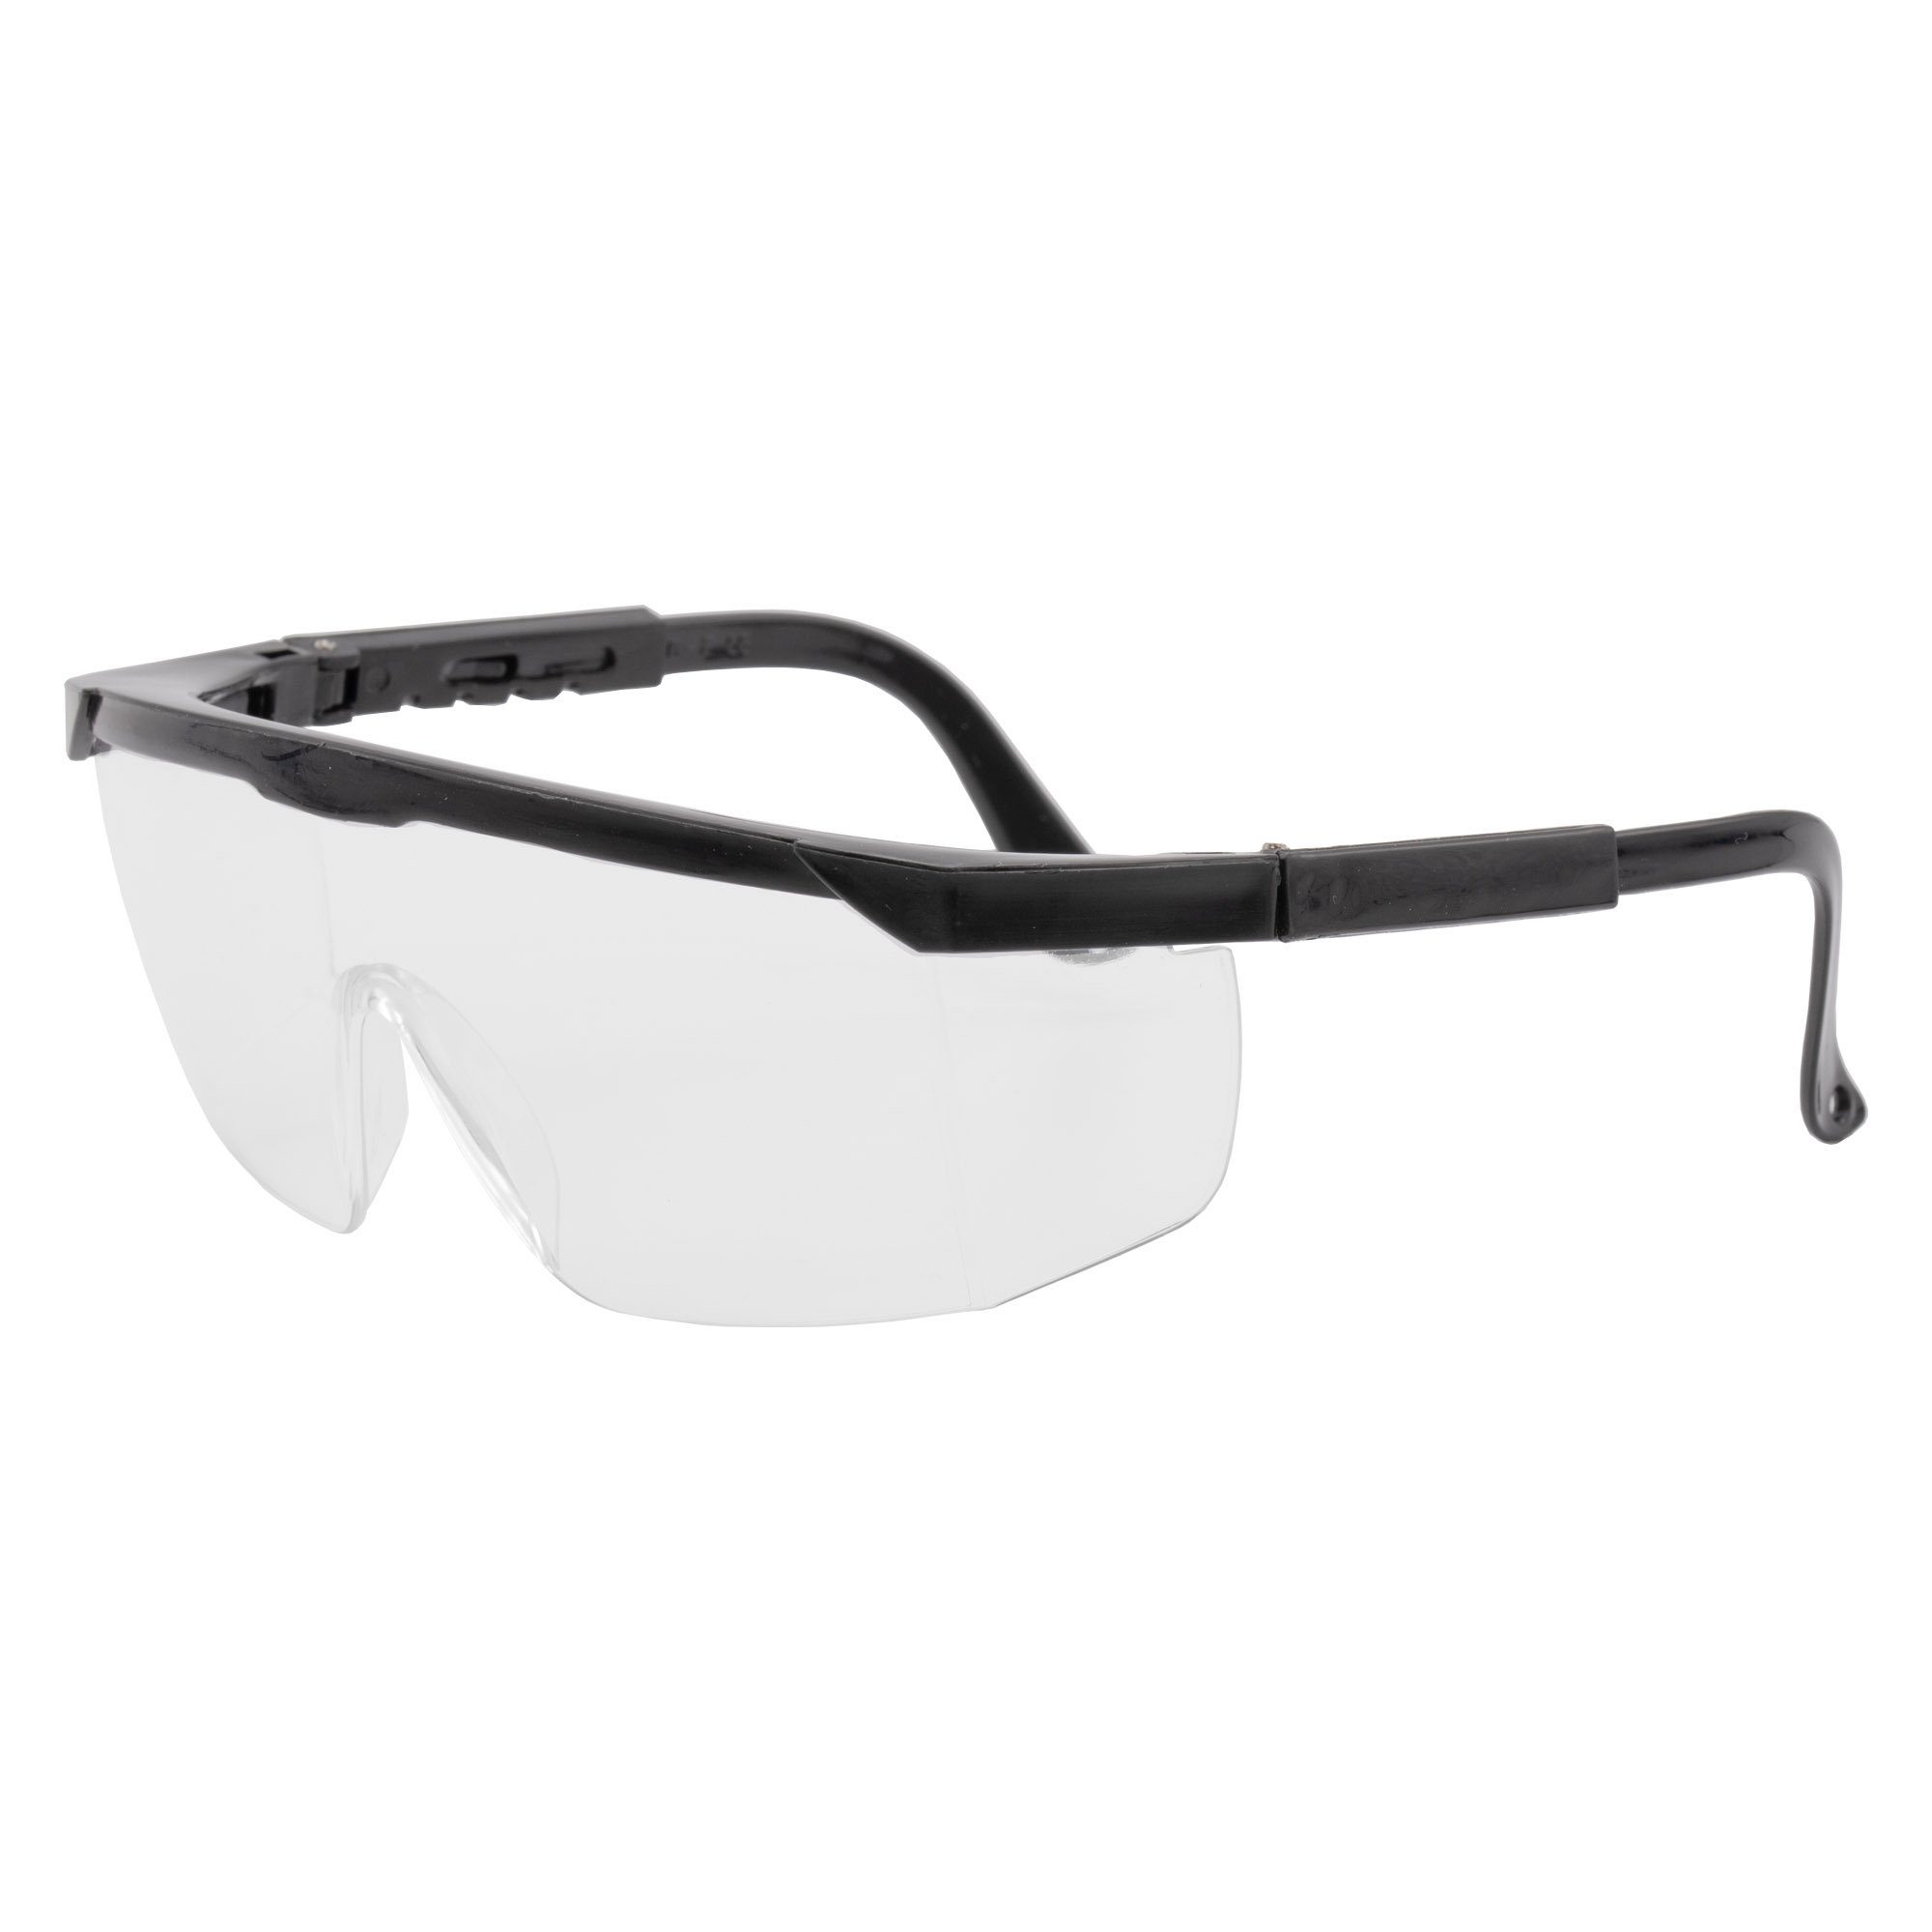 Schutzbrille Augenschutz, Sicherheitsbrille Arbeitsschutzbrille, 2x Arbeitsbrille conkor Arbeitsschutzbrille